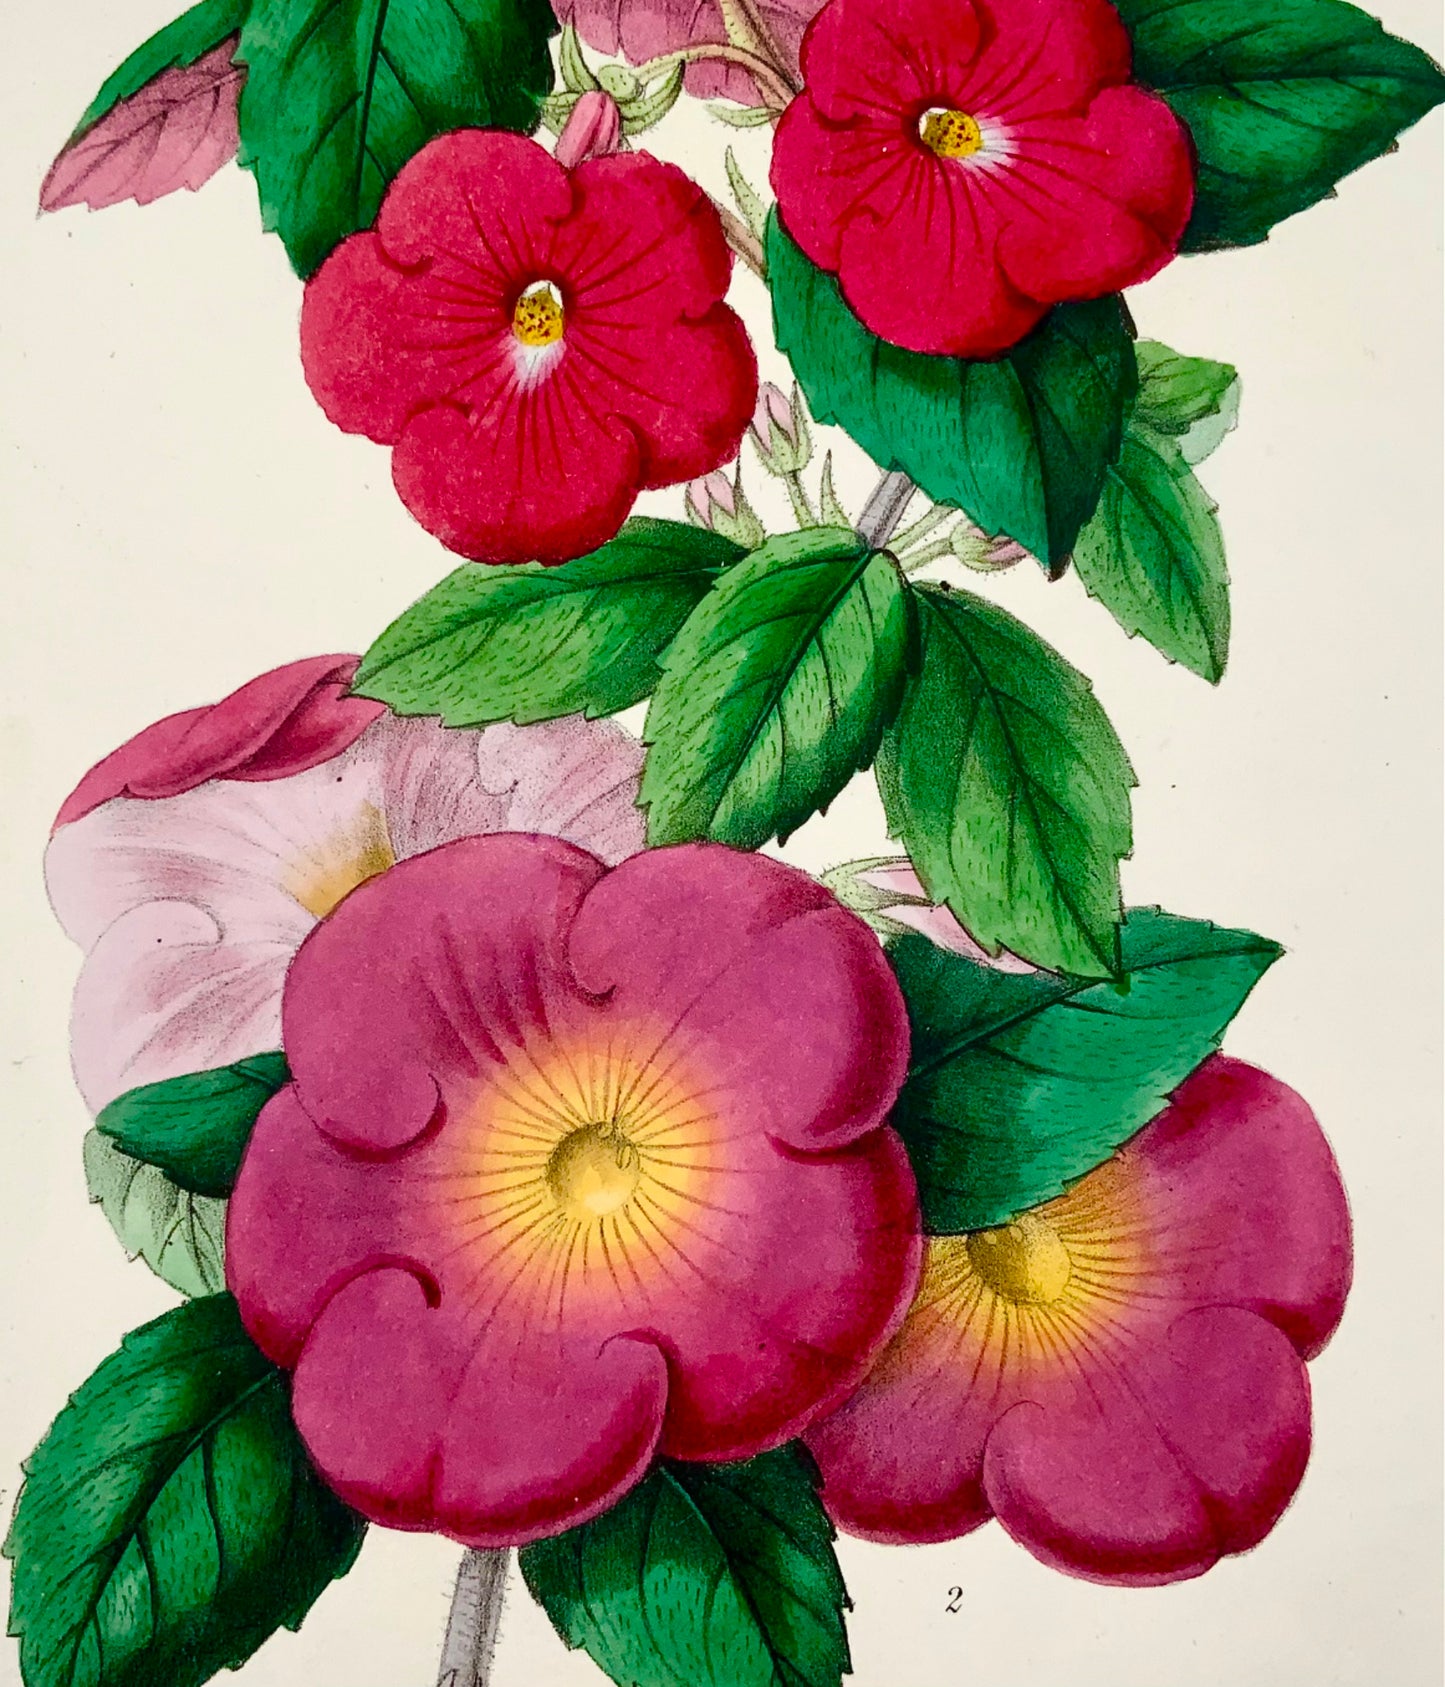 1858 FIORI MAGICI; James Andrews - Colore della mano squisito - Come tale RARO - Botanica